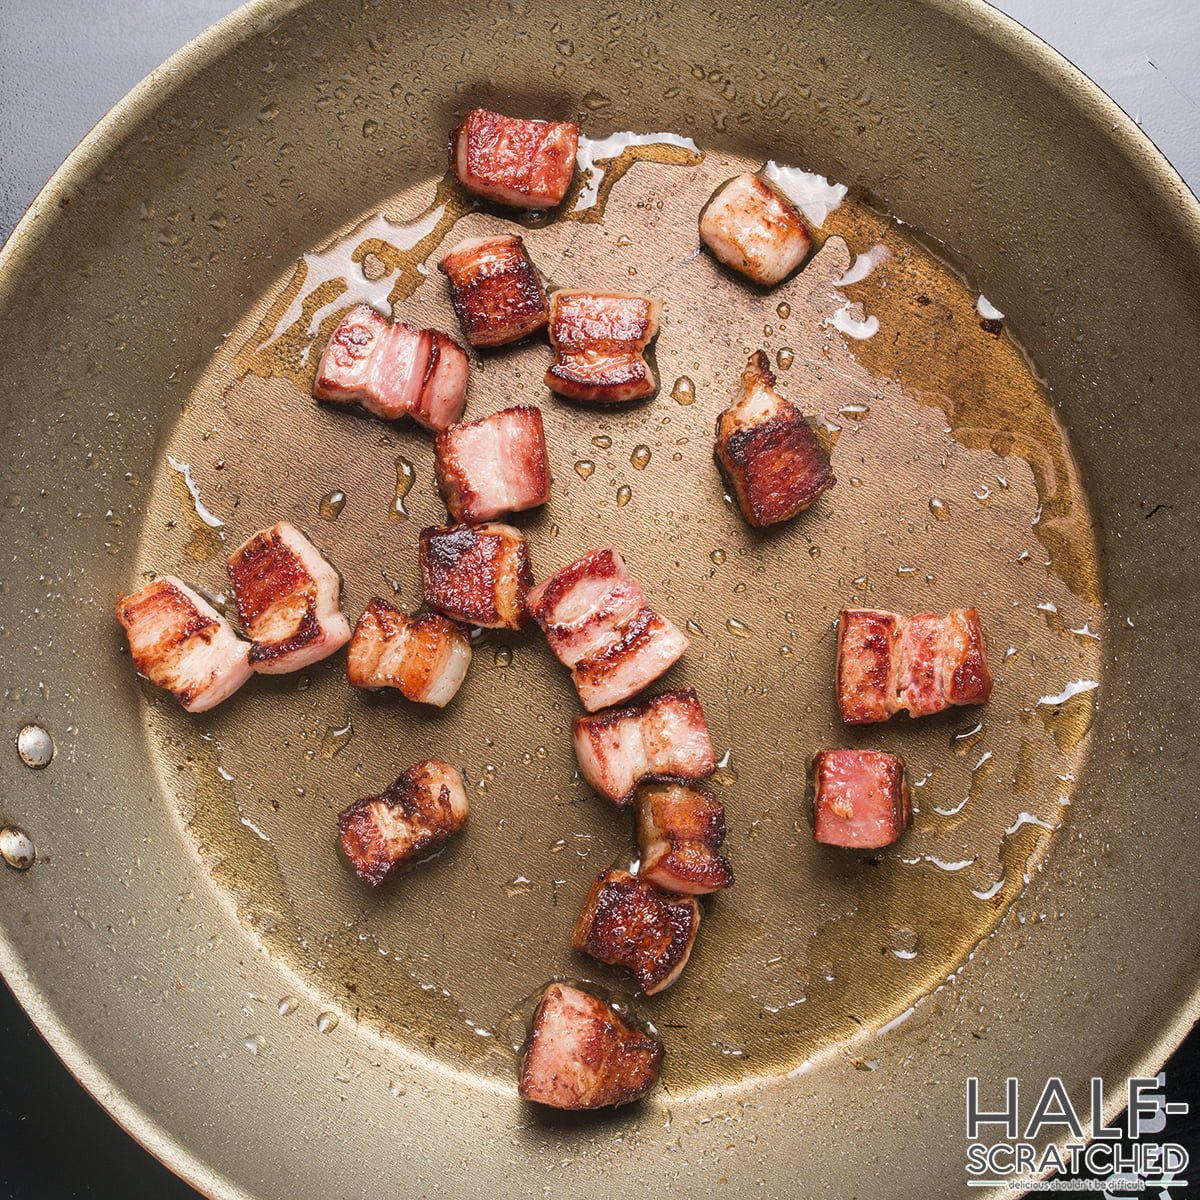 Frying bacon